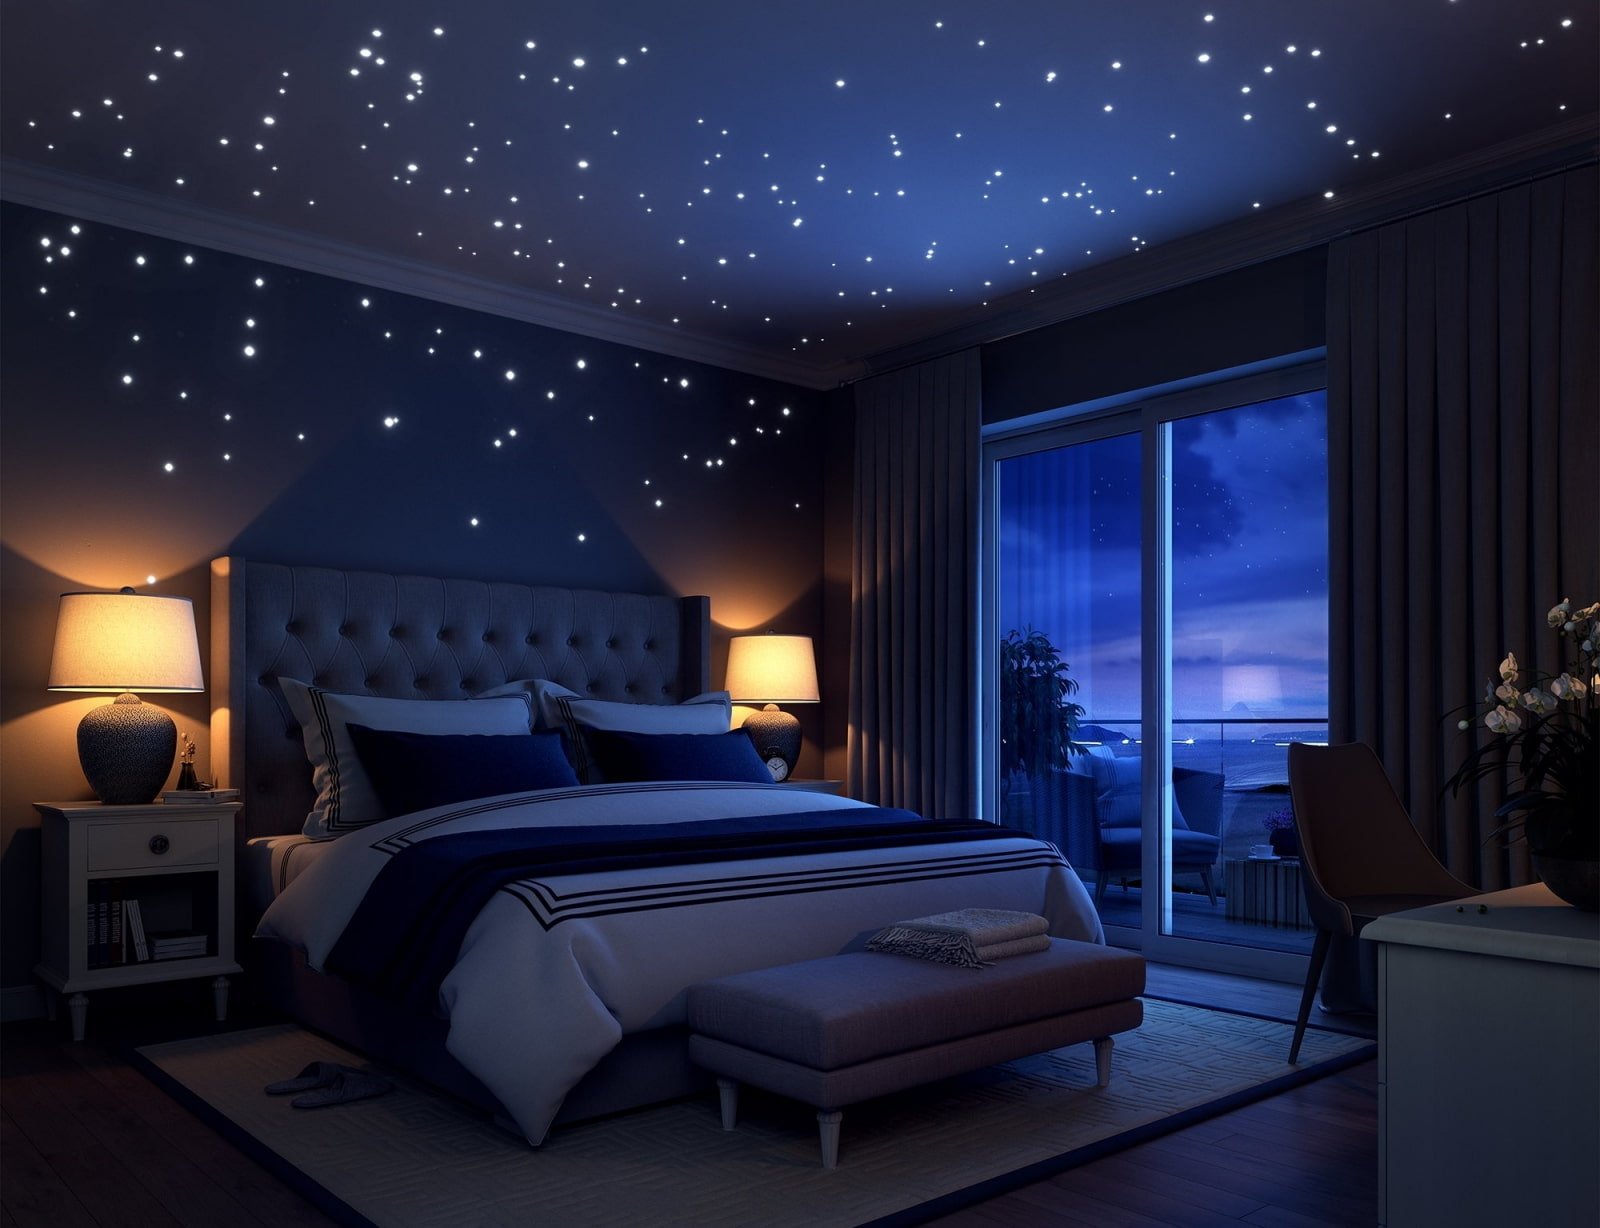 Led space. Потолок звездное небо. Натяжной потолок звездное небо. Потолок звездное небо в спальне. Потолок со звездами.